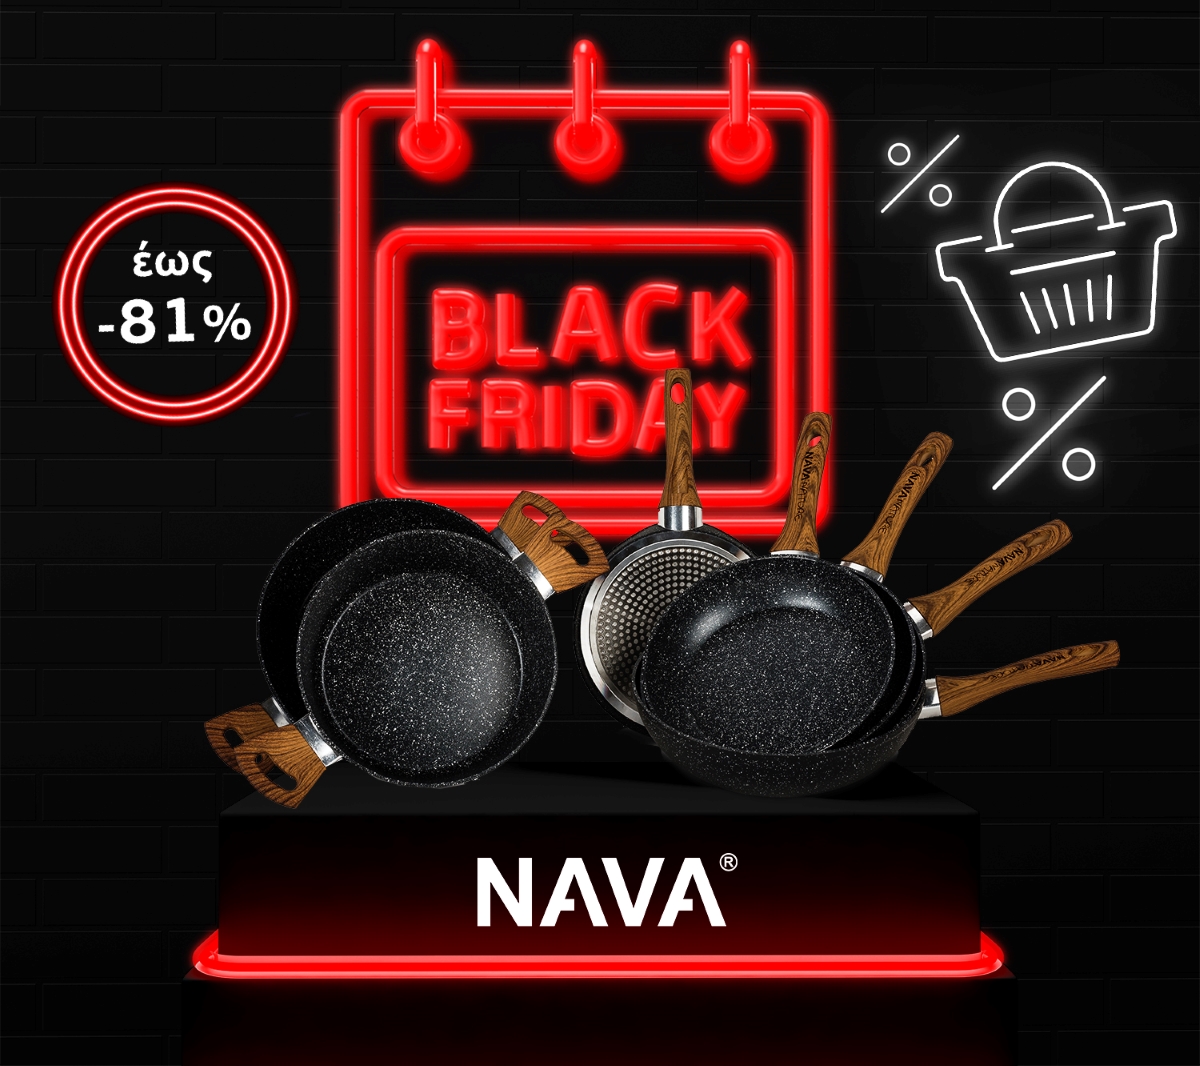 BLACKFRIDAY WEEK splenderà a NAVA!